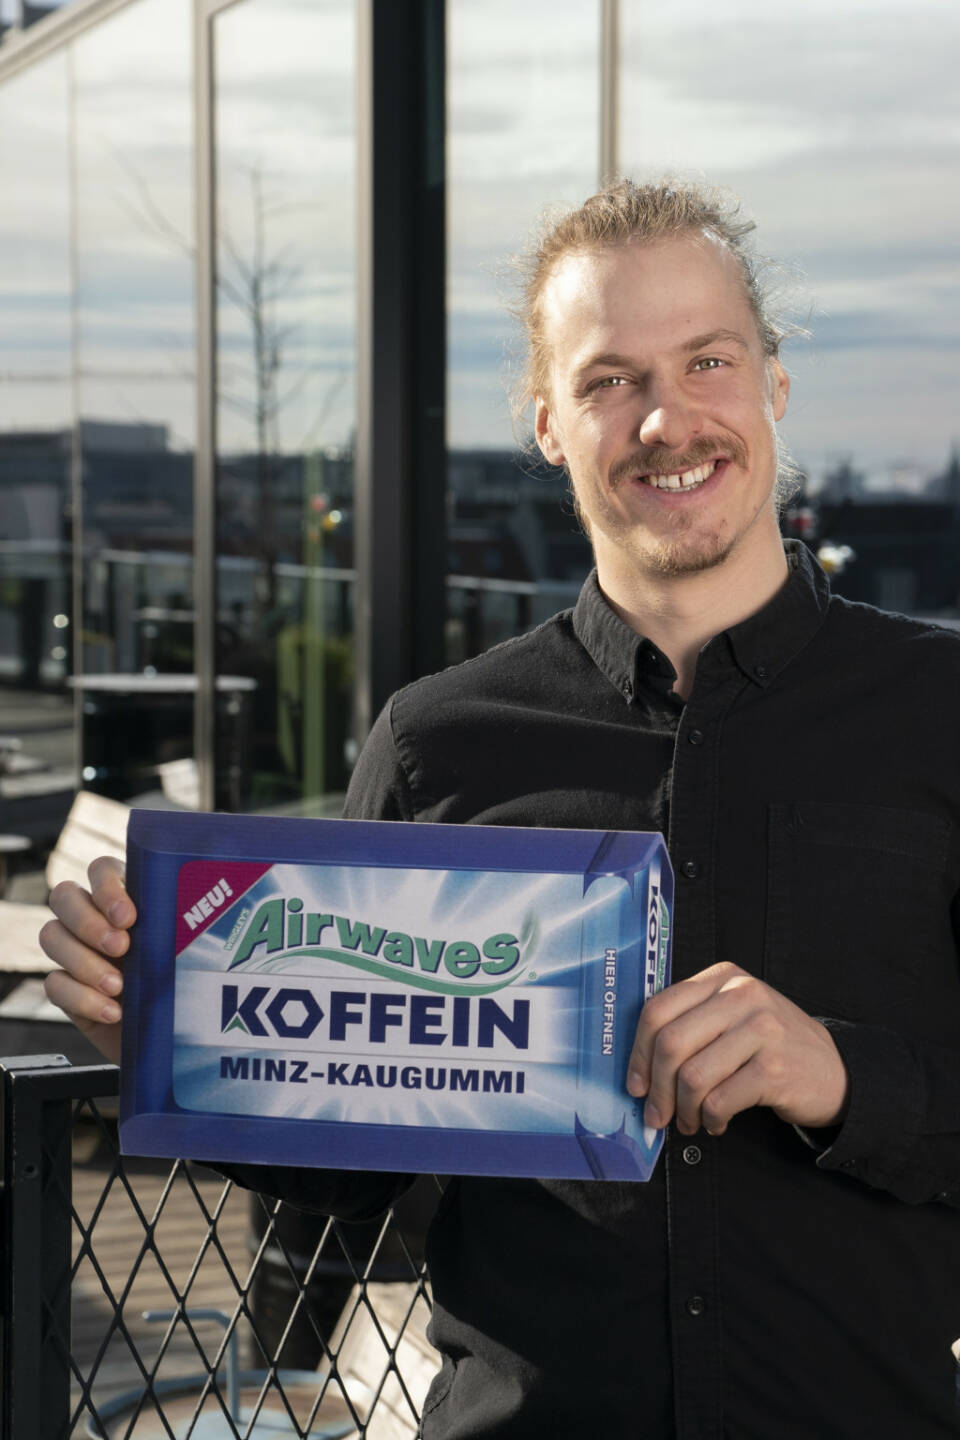 Manuel Feller und der neue Airwaves Koffein Kaugummi / Koffein-Kick fürs Saisonfinale, Fotocredit:adam GmbH Co KG